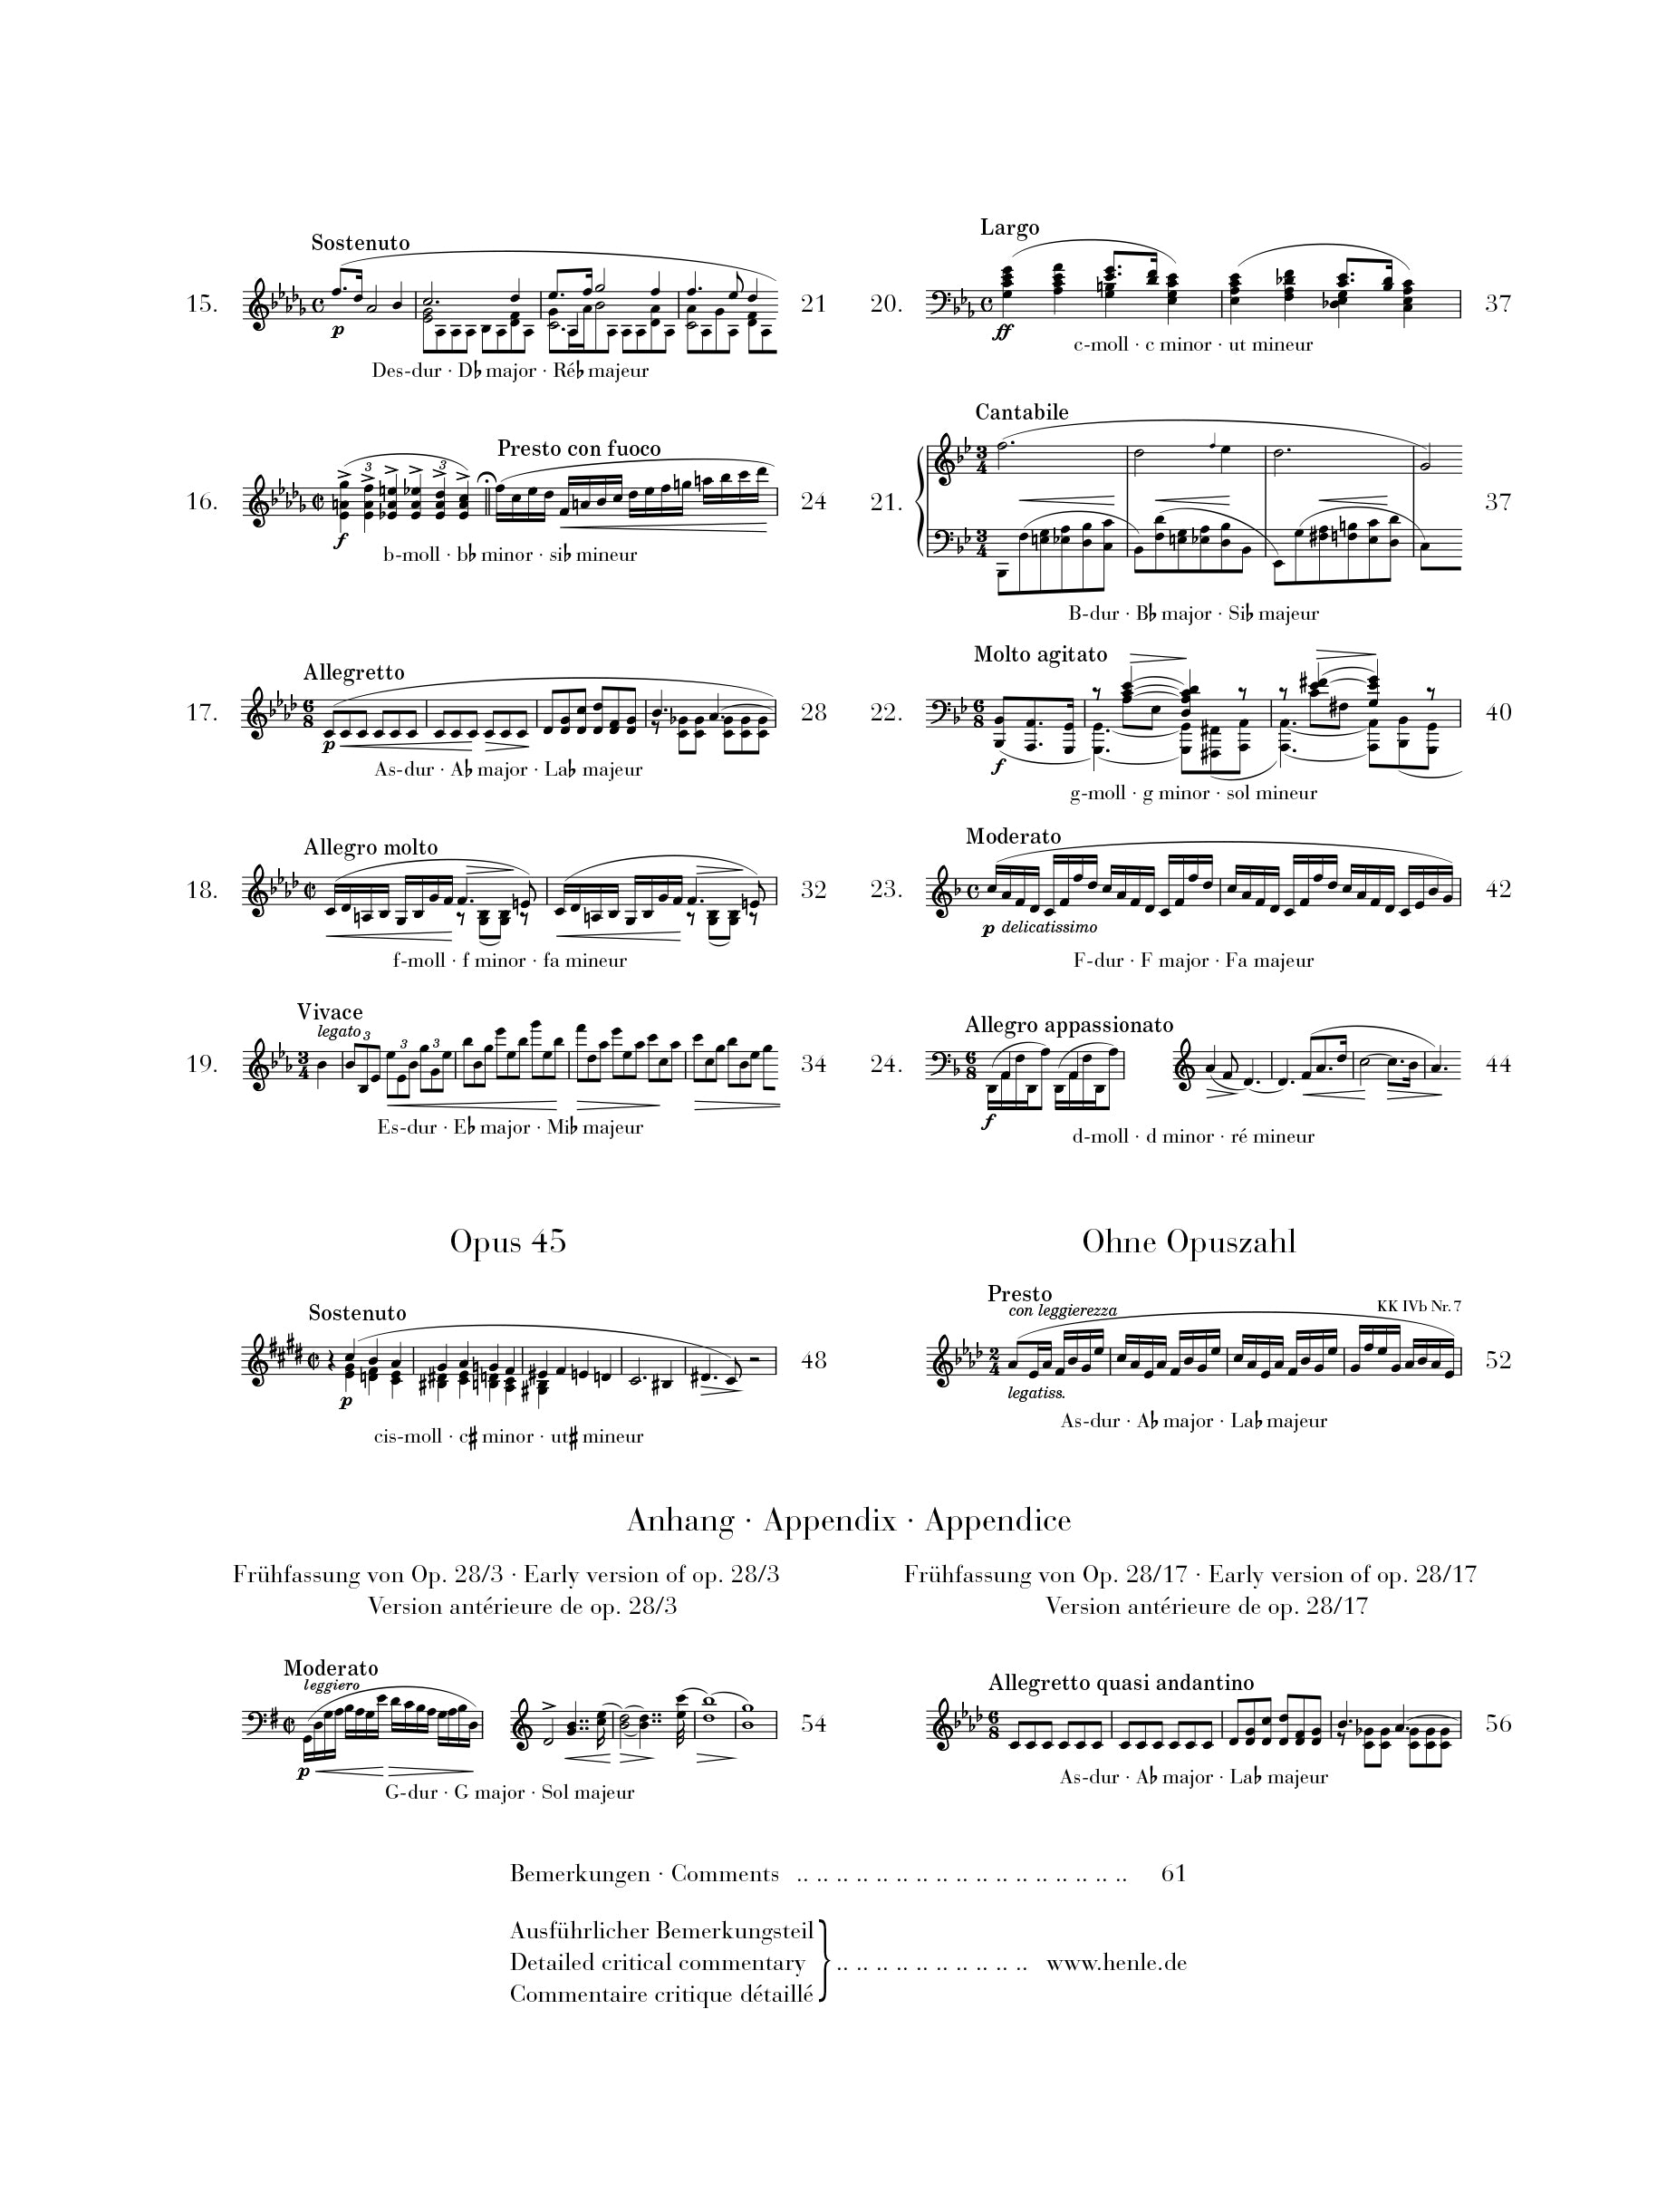 Chopin: Preludes Piano Solo